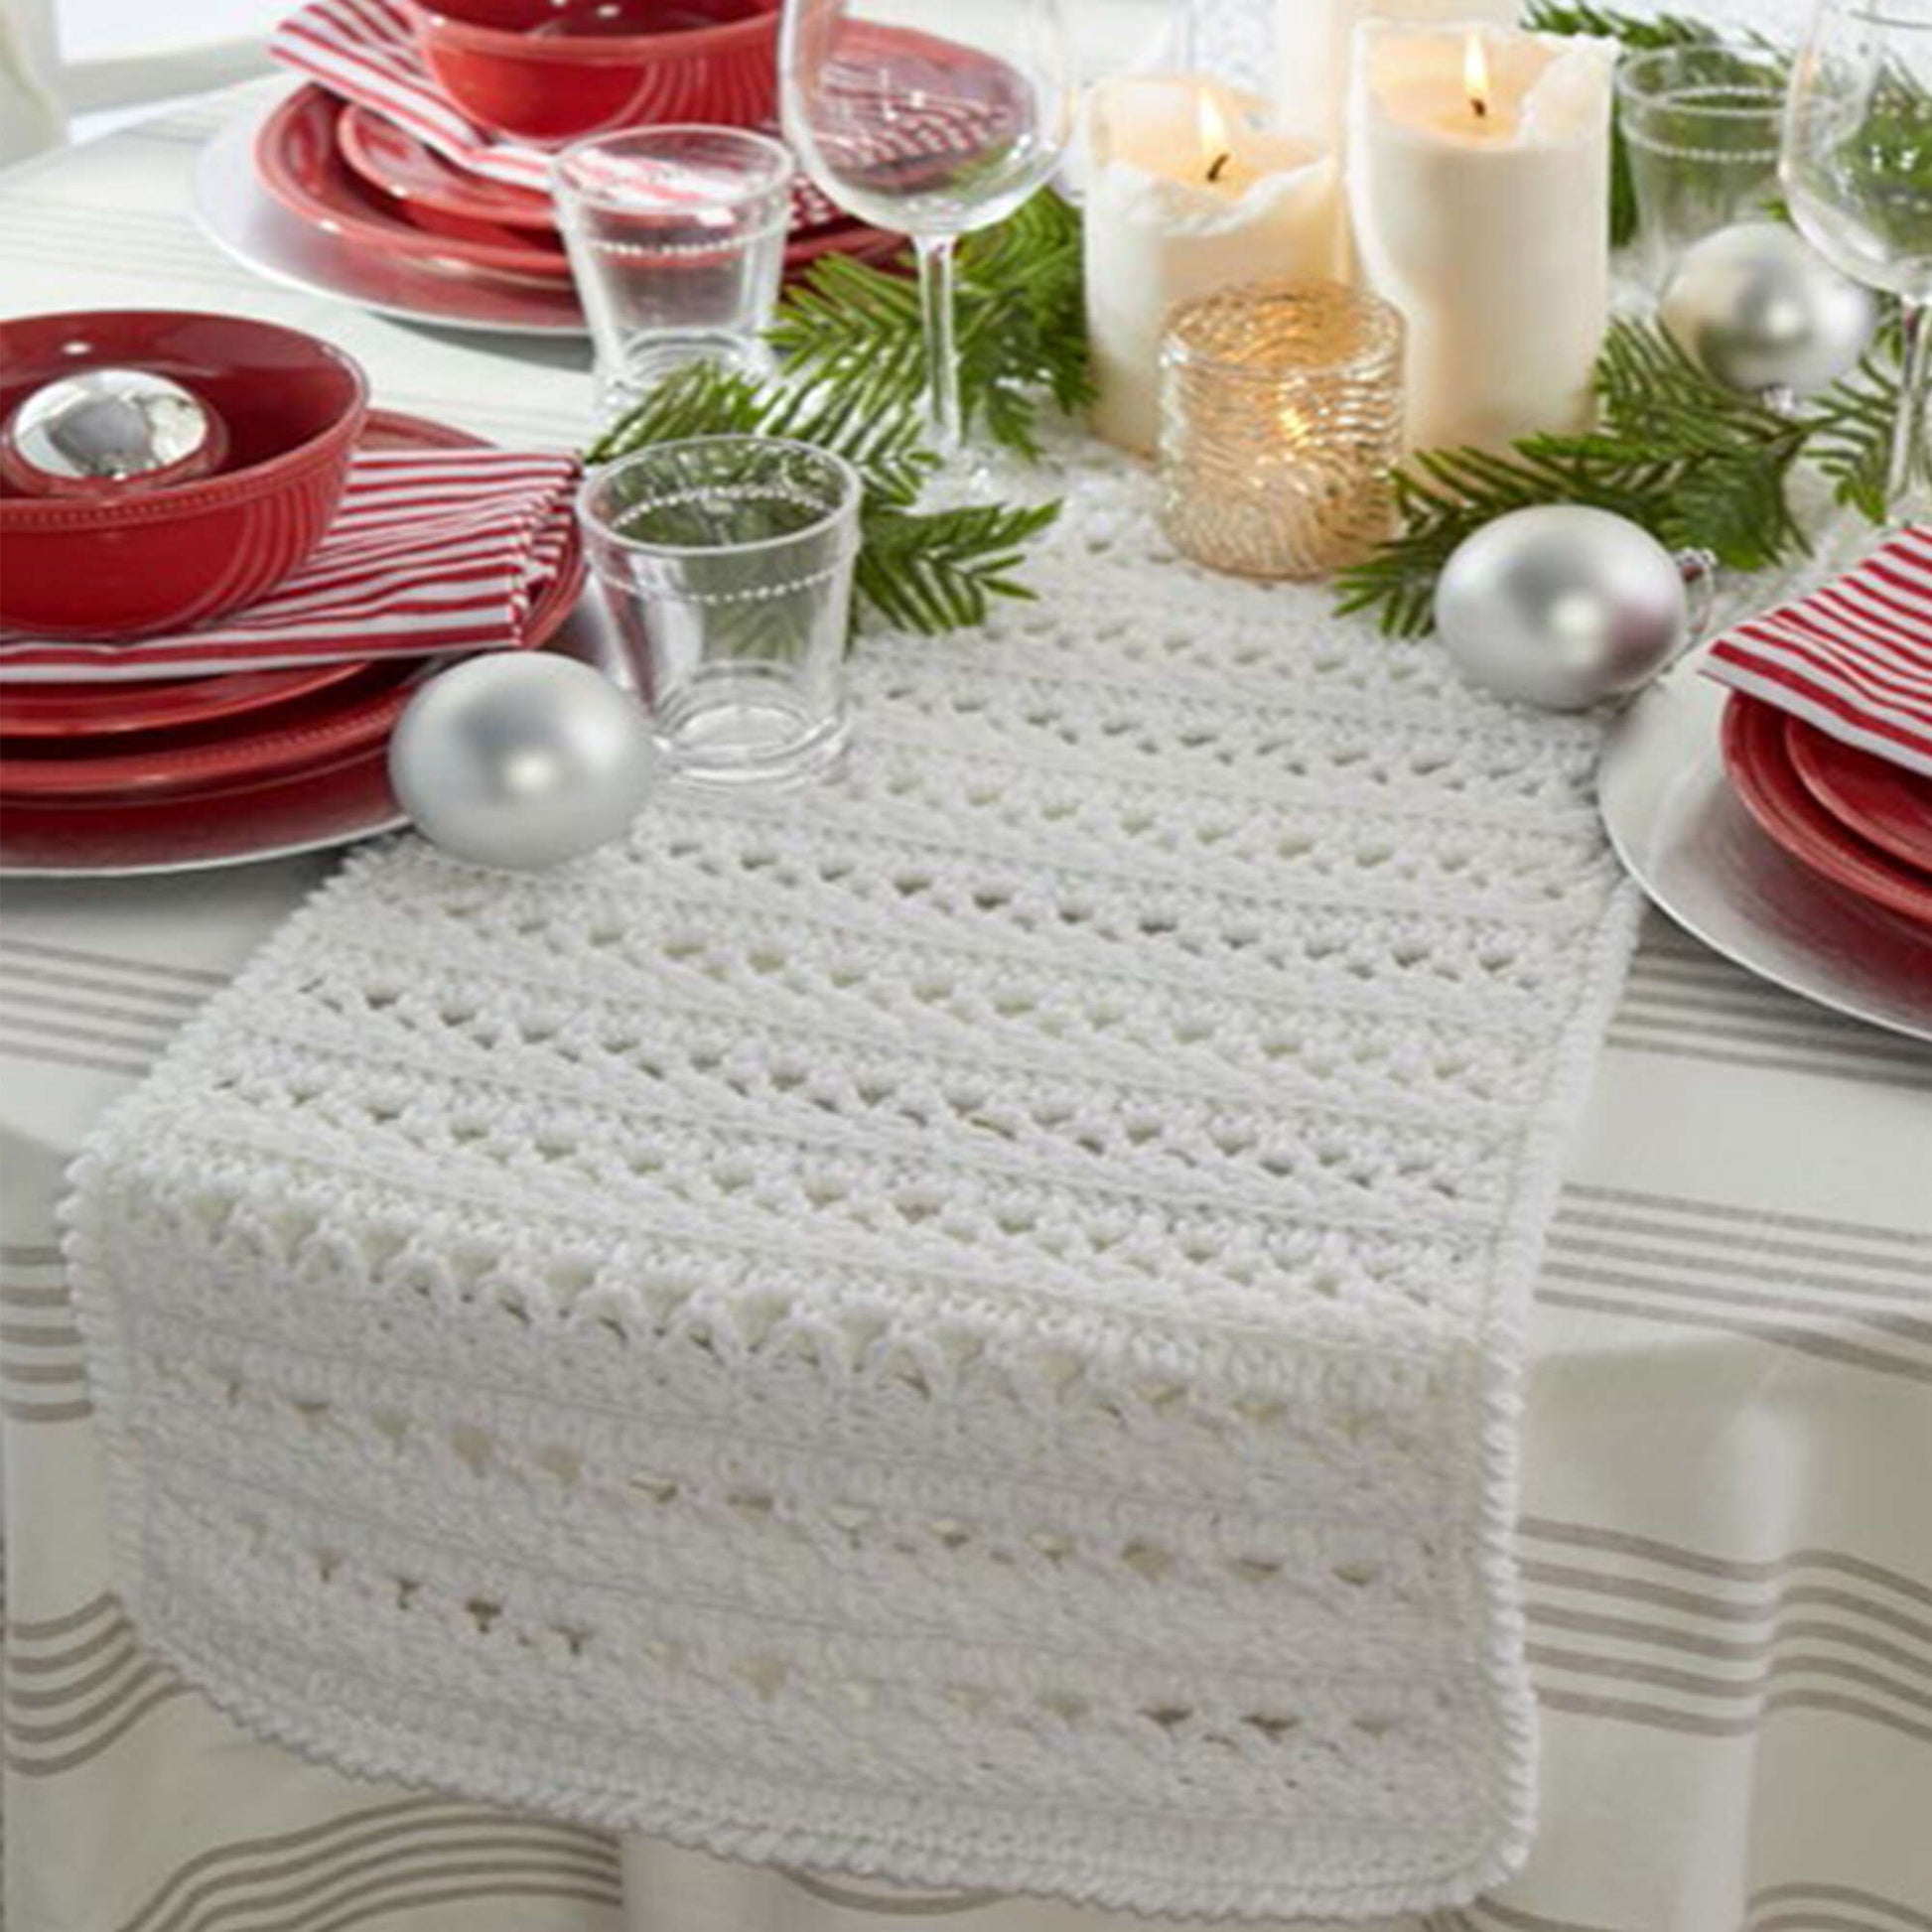 Free Red Heart Festive Sparkly Table Runner Crochet Pattern